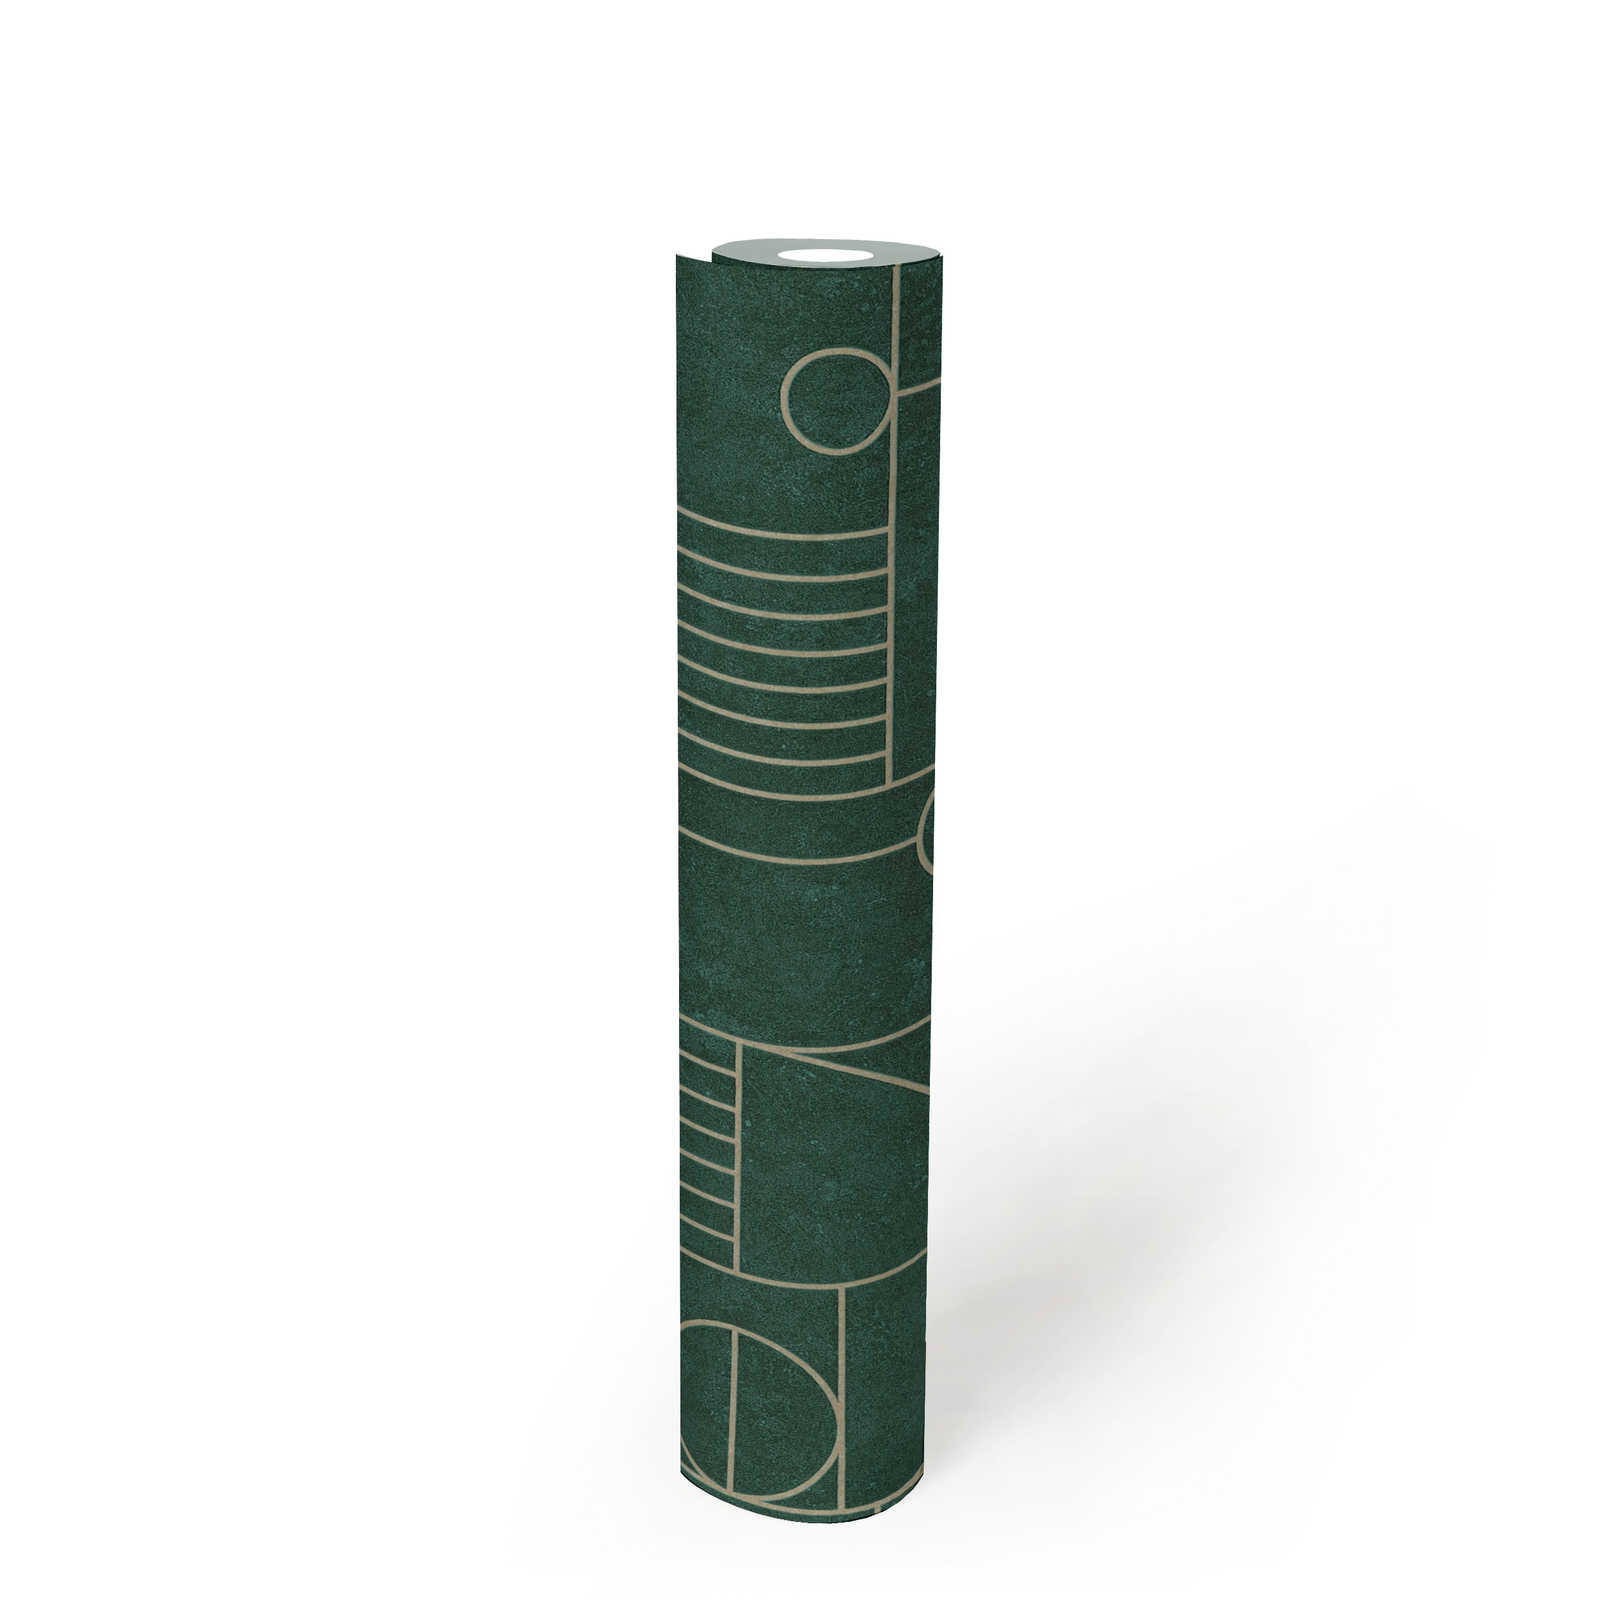             Papier peint effet carrelage Art Deco Design marbré - vert, métallique
        